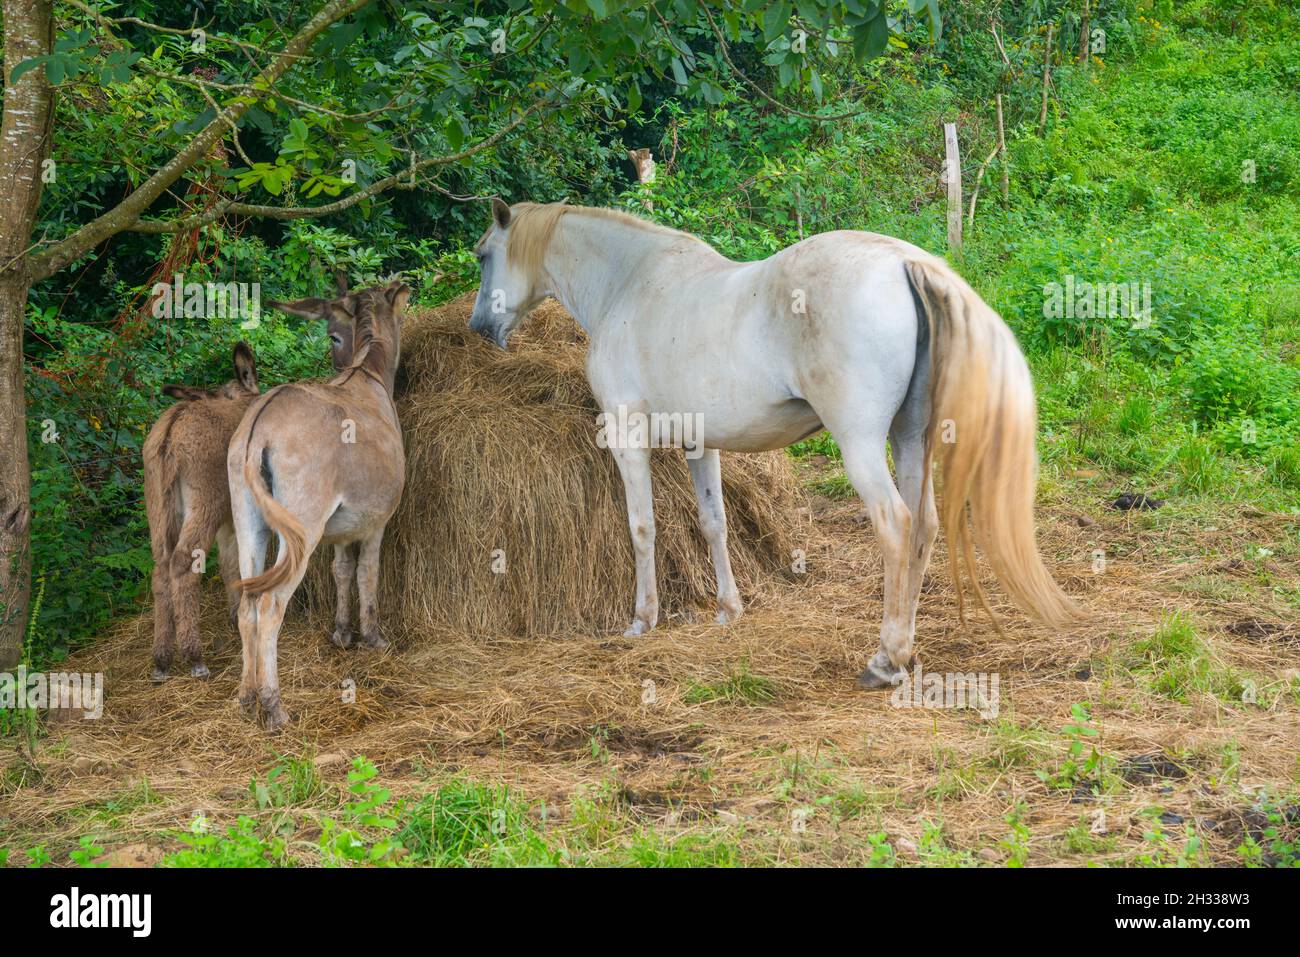 Horse and donkeys eating straw. Stock Photo